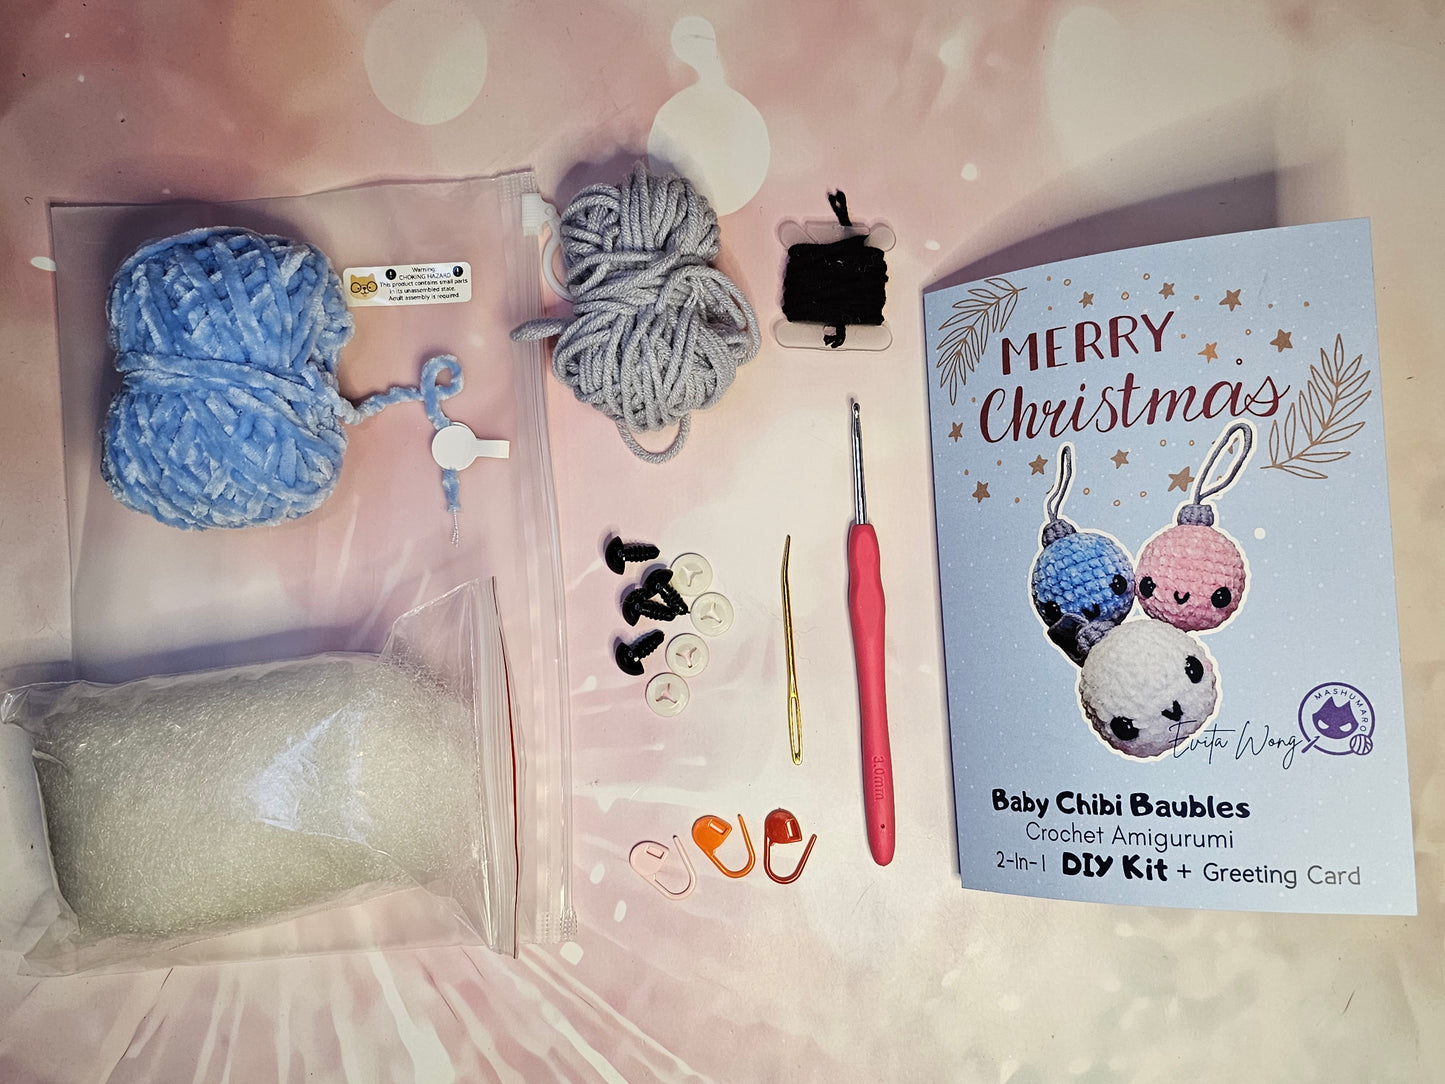 Baby Chibi Baubles DIY Kit & Greeting Card 2-in-1